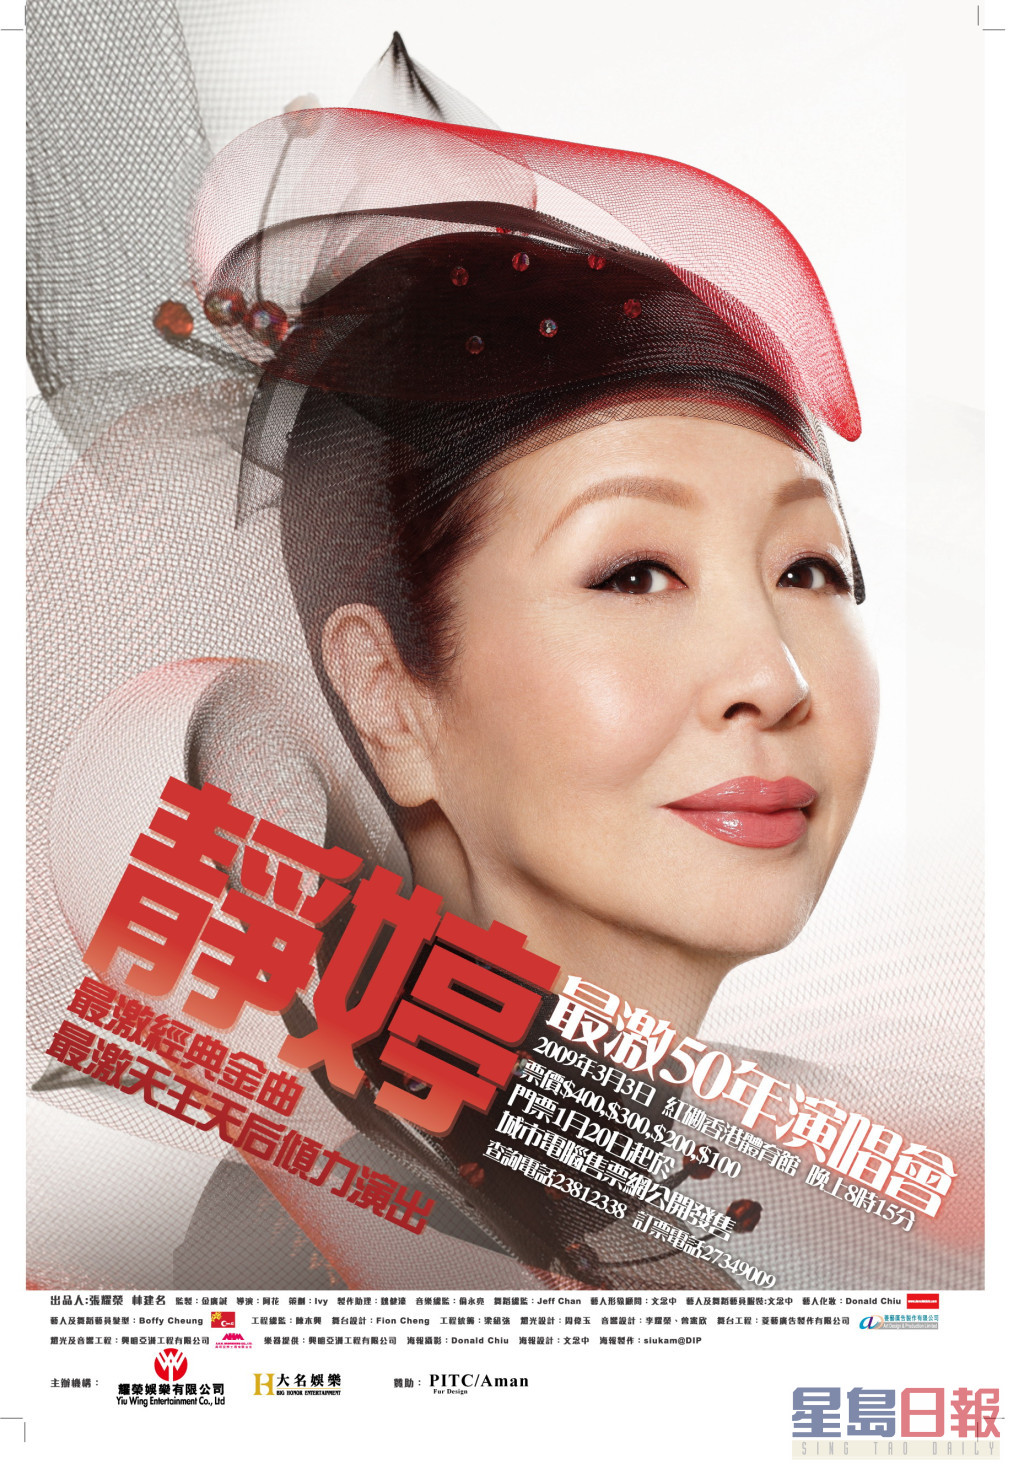 2009年，「万能歌后」静婷入行50年举行《静婷最激50年演唱会》。